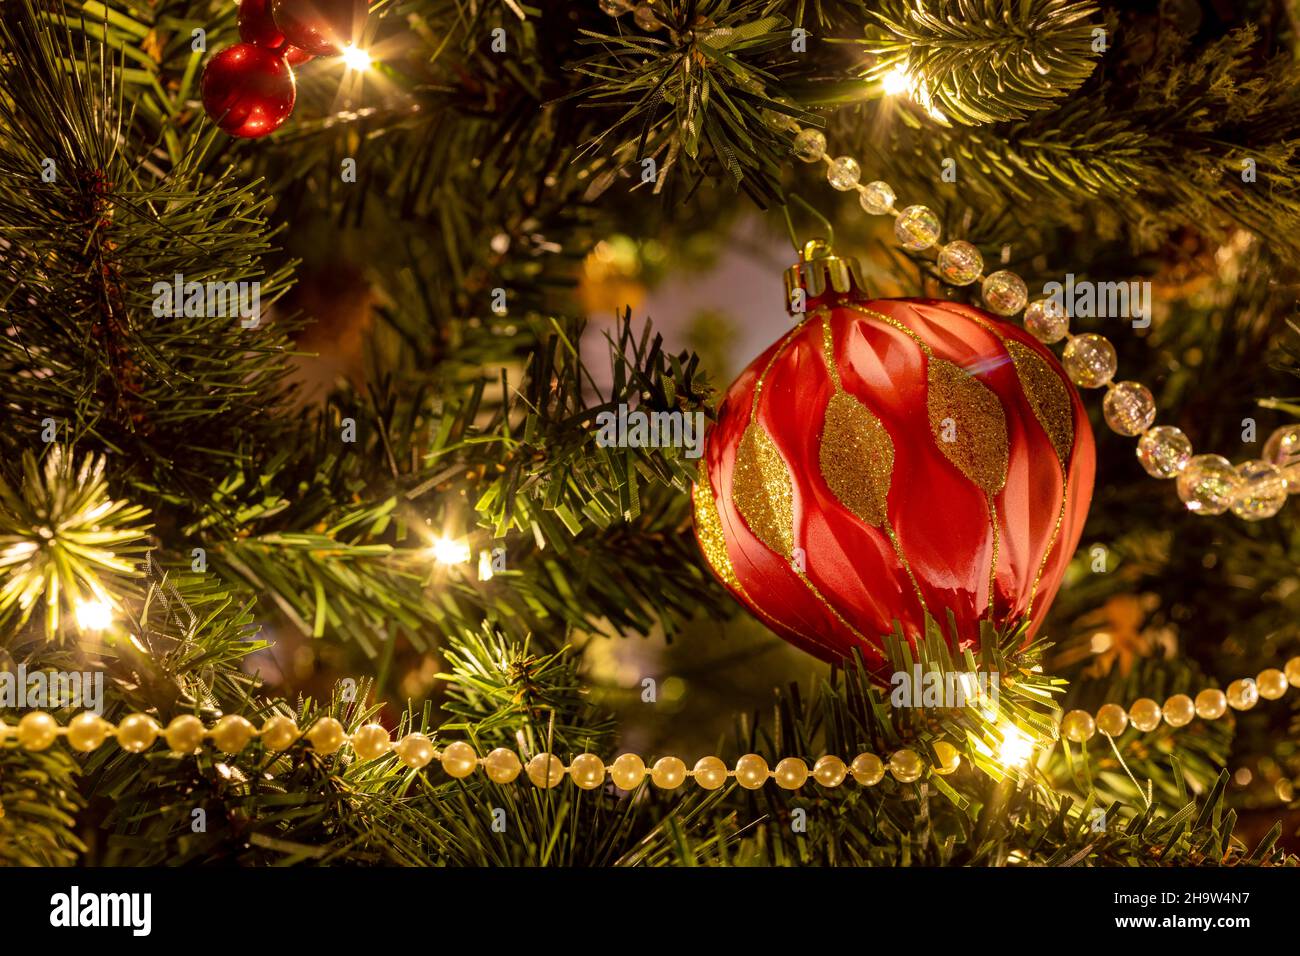 Sapin de Noël illuminé avec décorations de Noël Banque D'Images